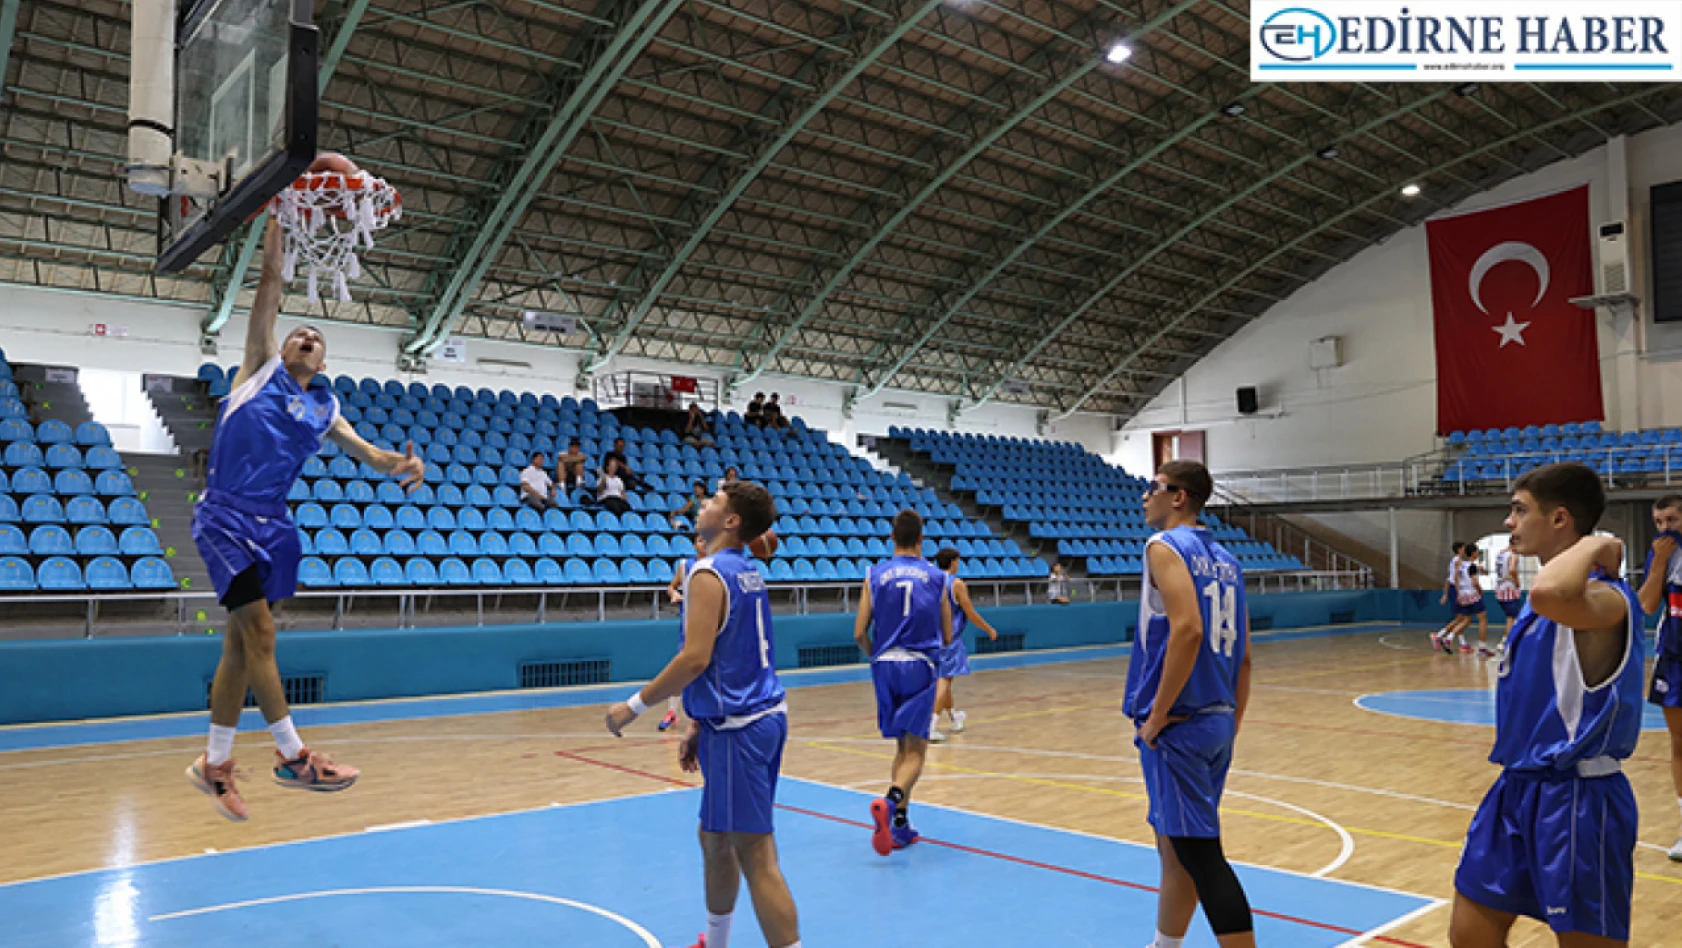 Türkiye, Bulgaristan ve Sırbistan'dan 11 basketbol takımı Edirne'de hazırlık kampında bir araya geldi